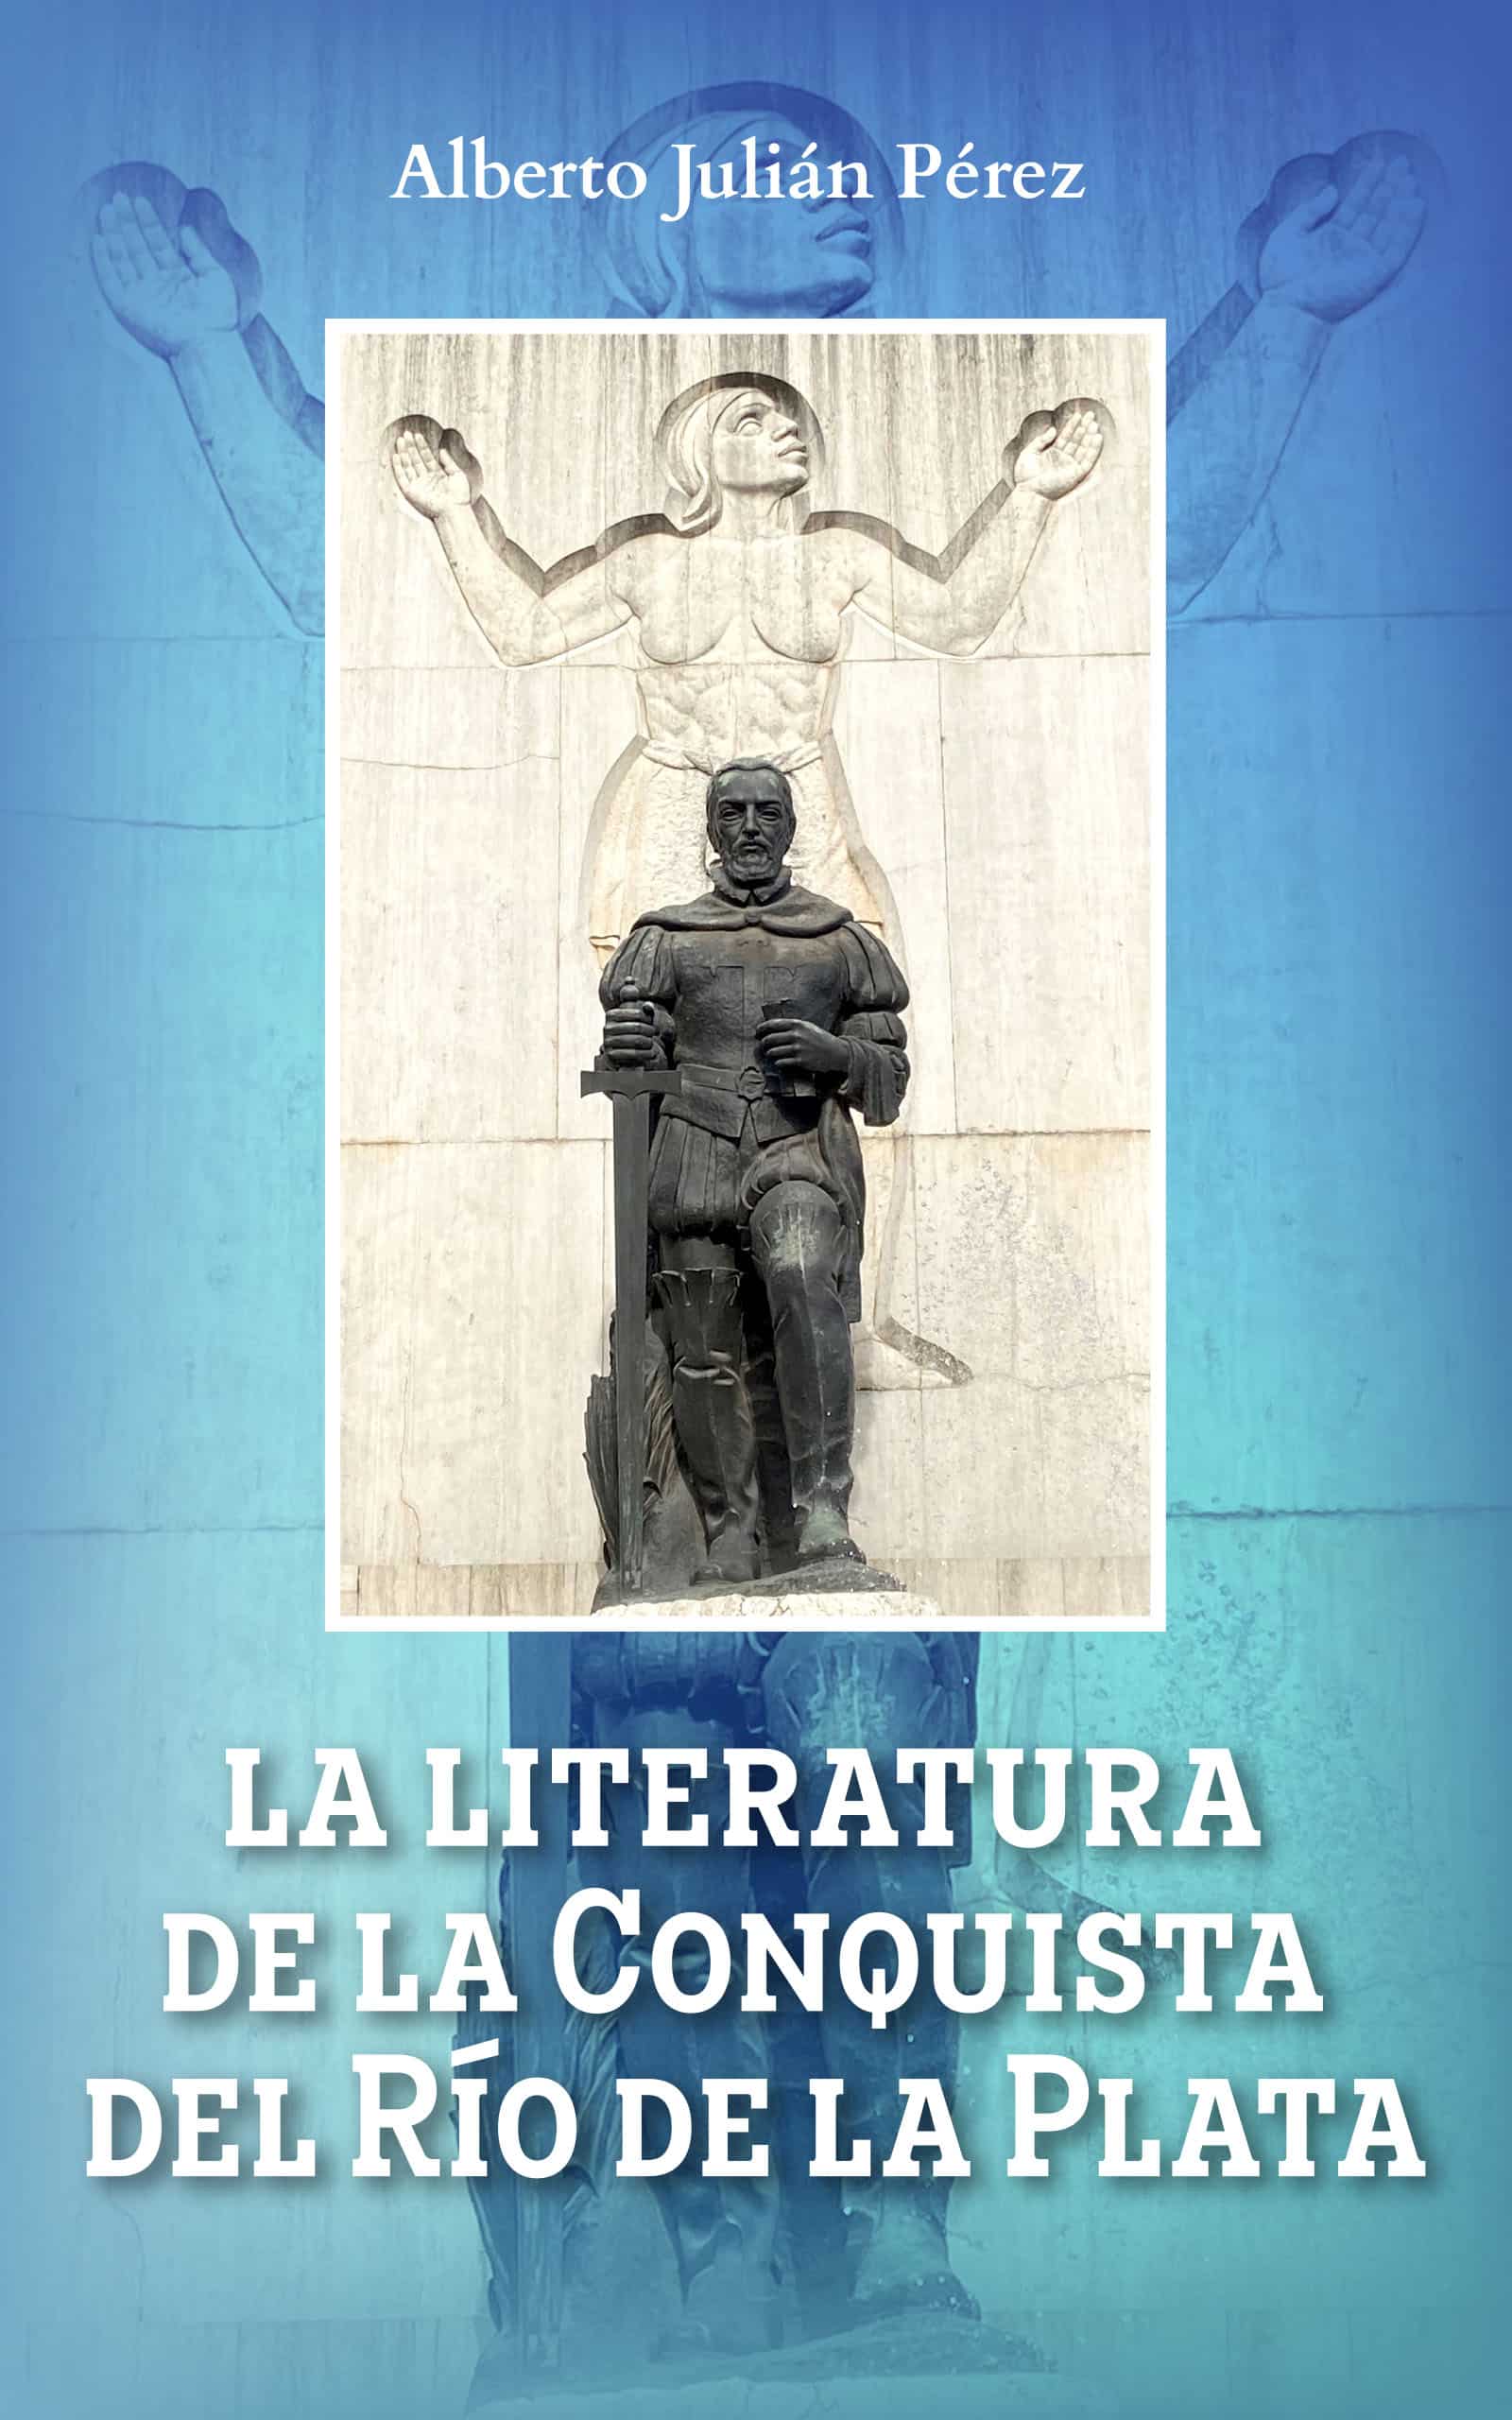 La literatura de la conquista del Río de la Plata, de Alberto Julián Pérez